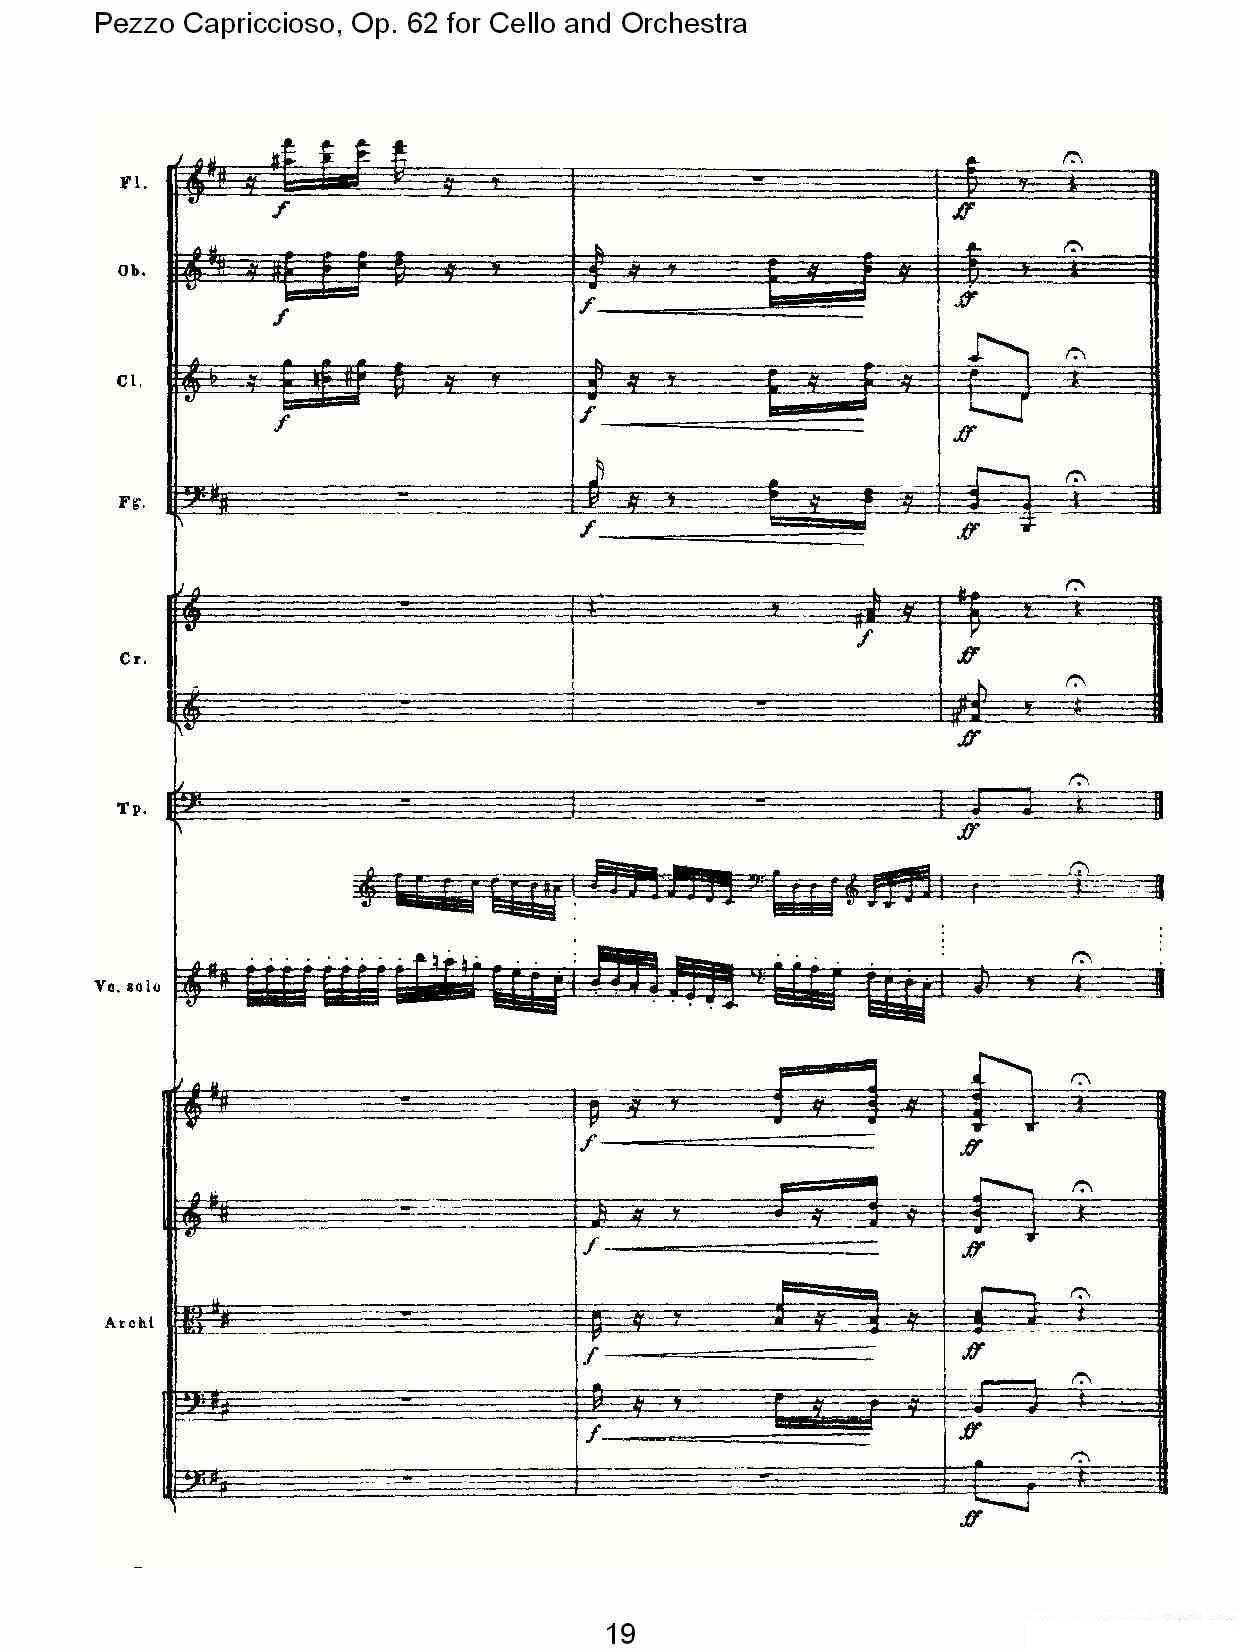 彼得·伊利奇·柴可夫斯基《Pezzo Capriccioso, Op.62》提琴谱（第19页）